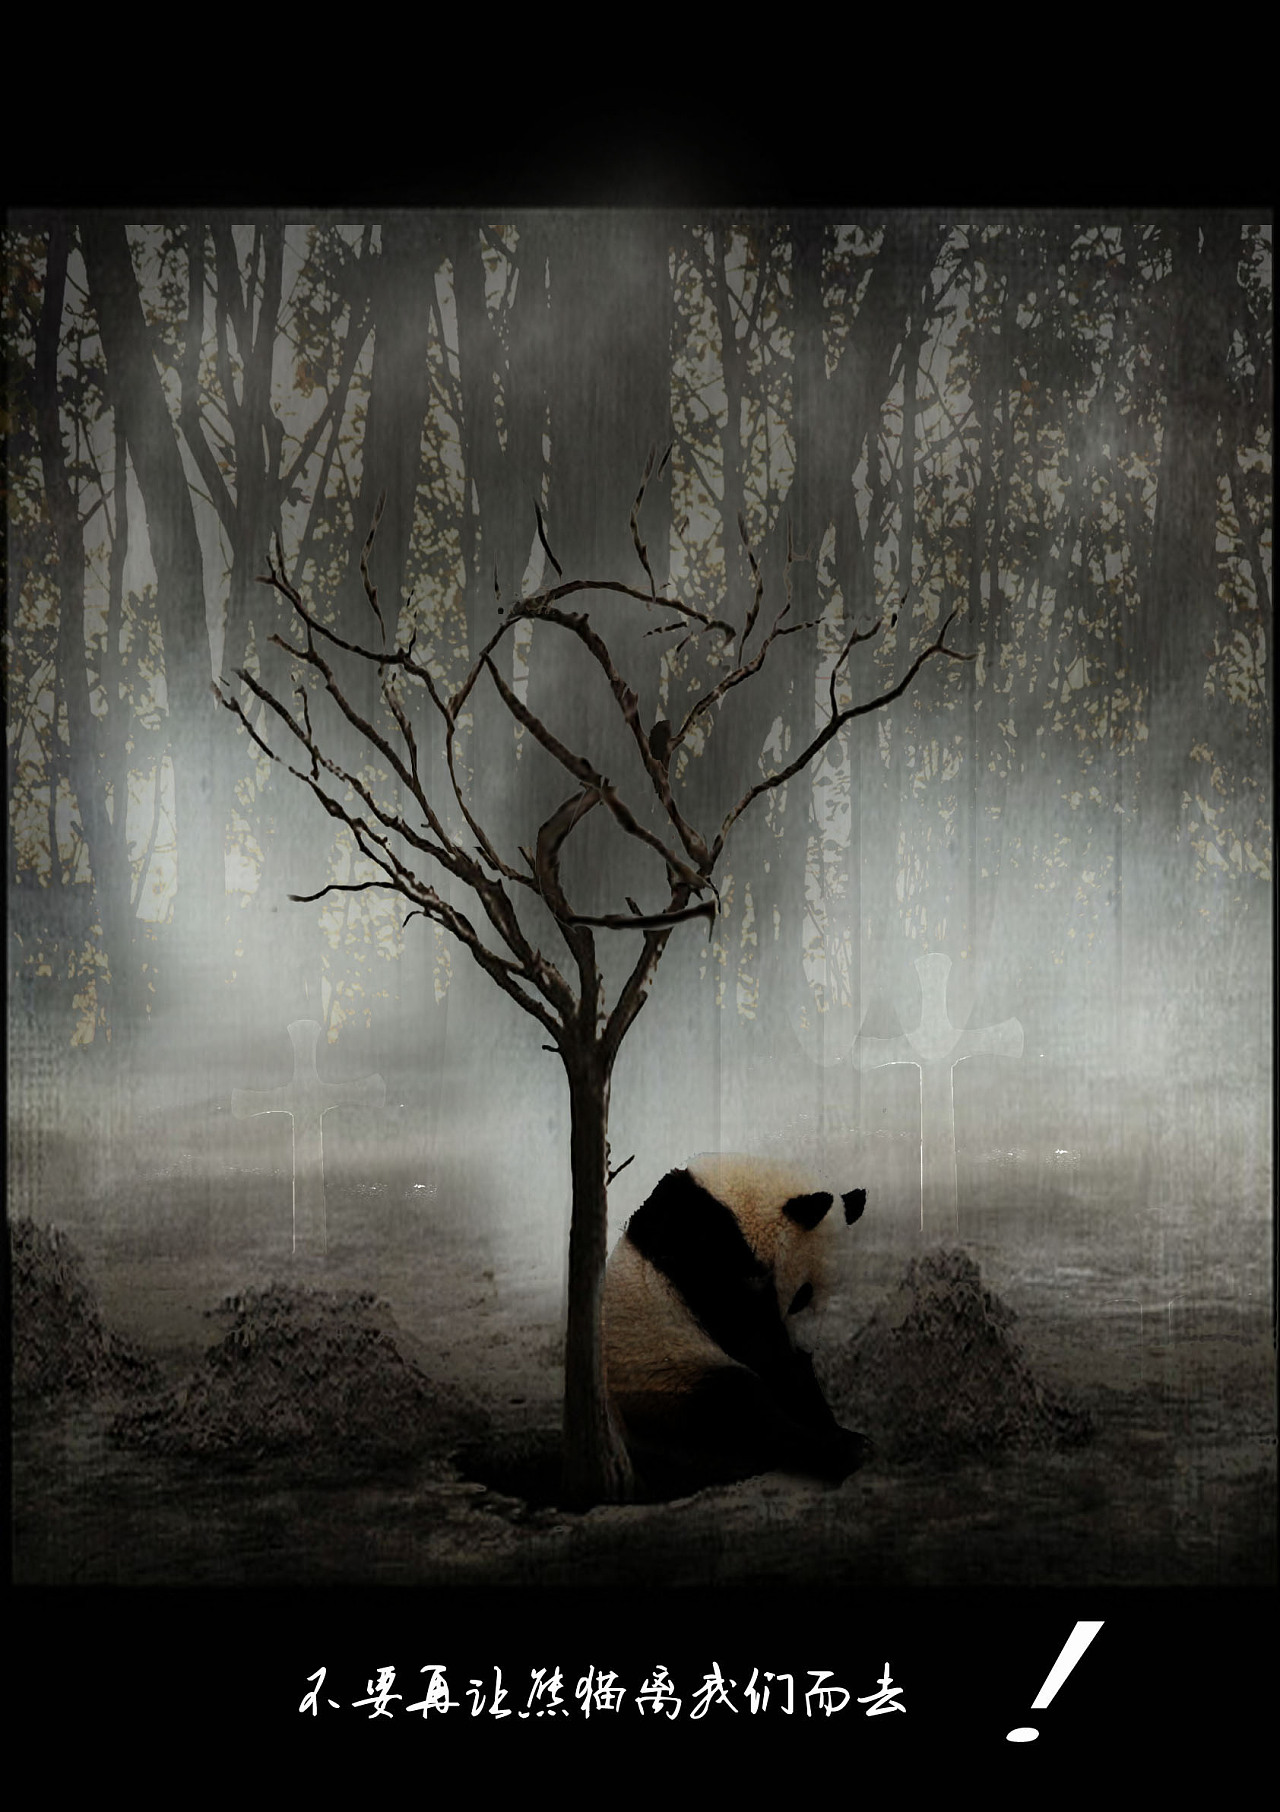 本作品熊猫为主,以坟墓和枯树做辅助,来衬托出熊猫的孤独